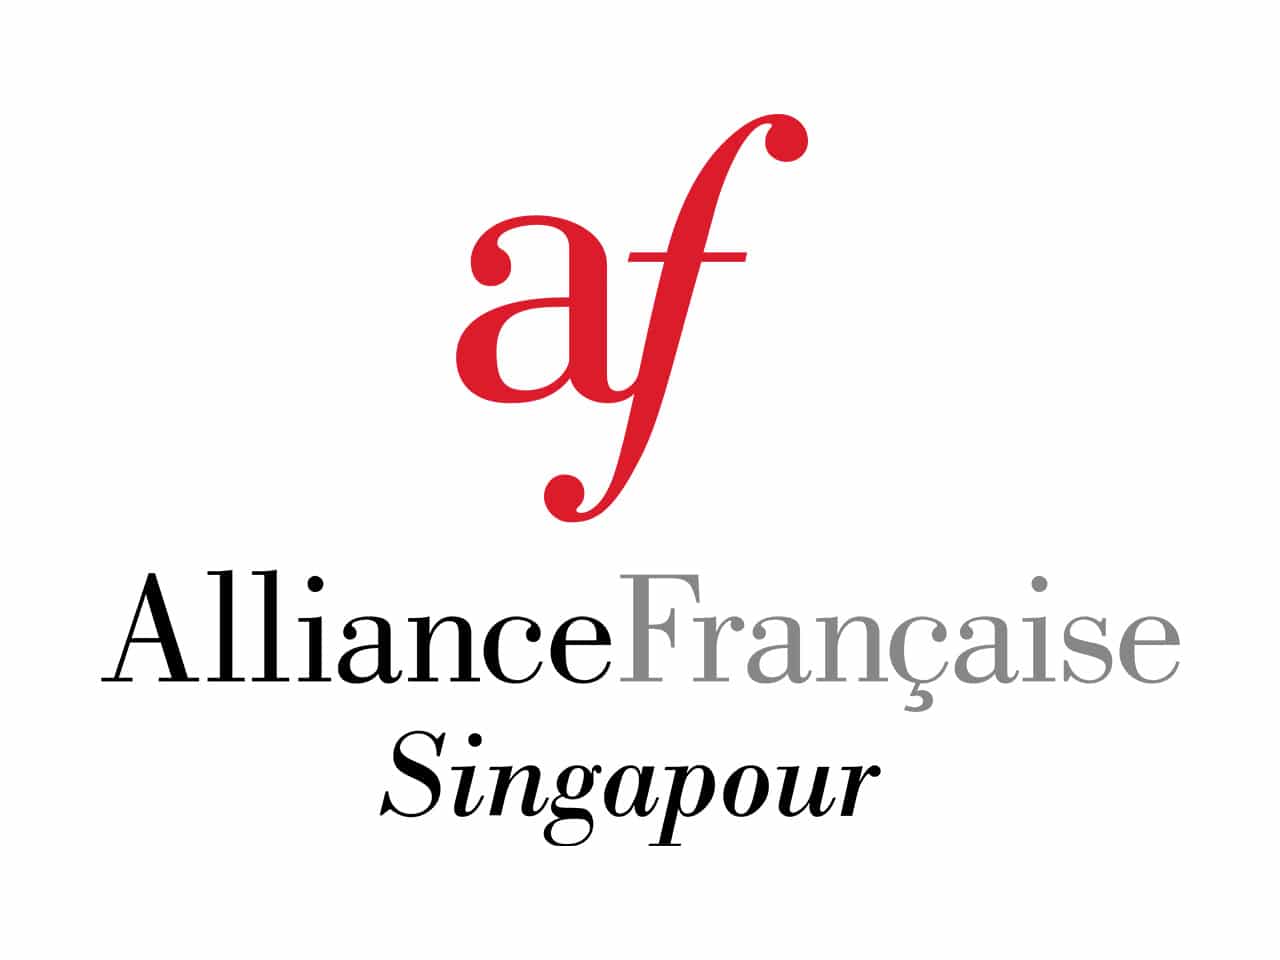 Alliance Française Singapour